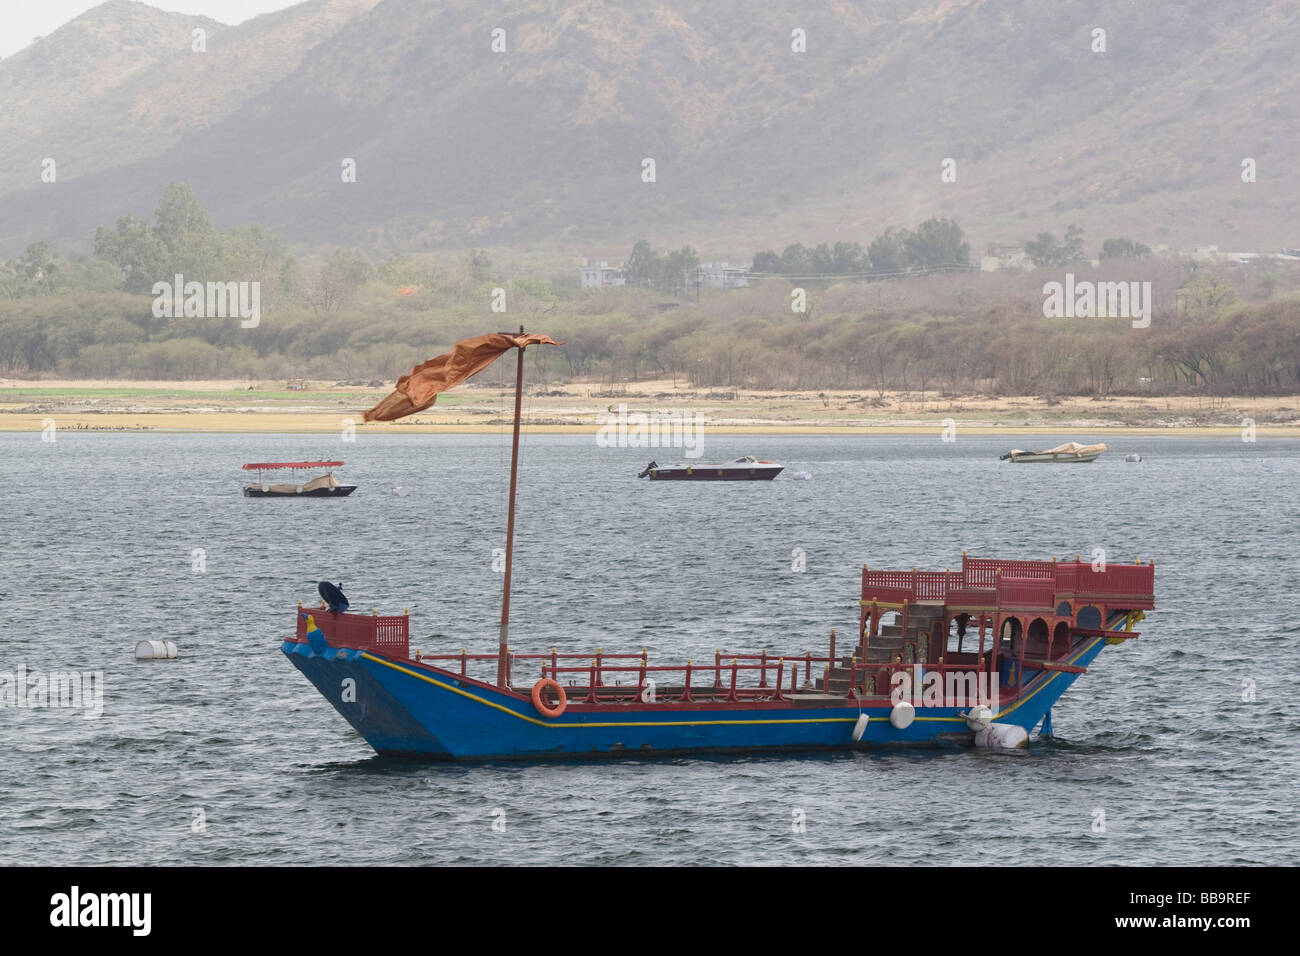 Inde Rajasthan Udaipur un tour de bateau sur le lac Pichola Rajasthan traditionnel voile Banque D'Images